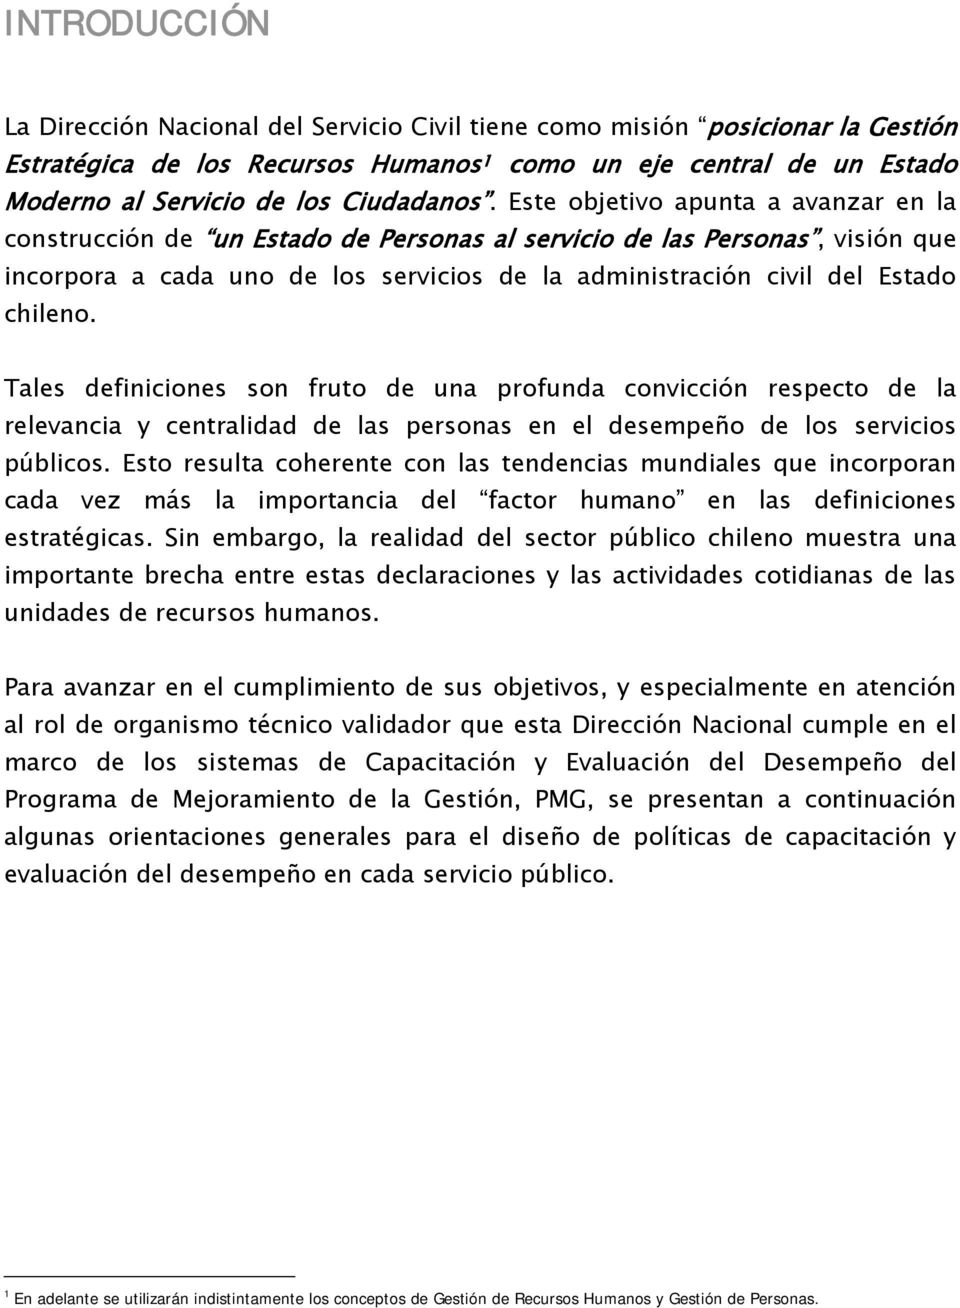 Este objetivo apunta a avanzar en la construcción de un Estado de Personas al servicio de las Personas, visión que incorpora a cada uno de los servicios de la administración civil del Estado chileno.